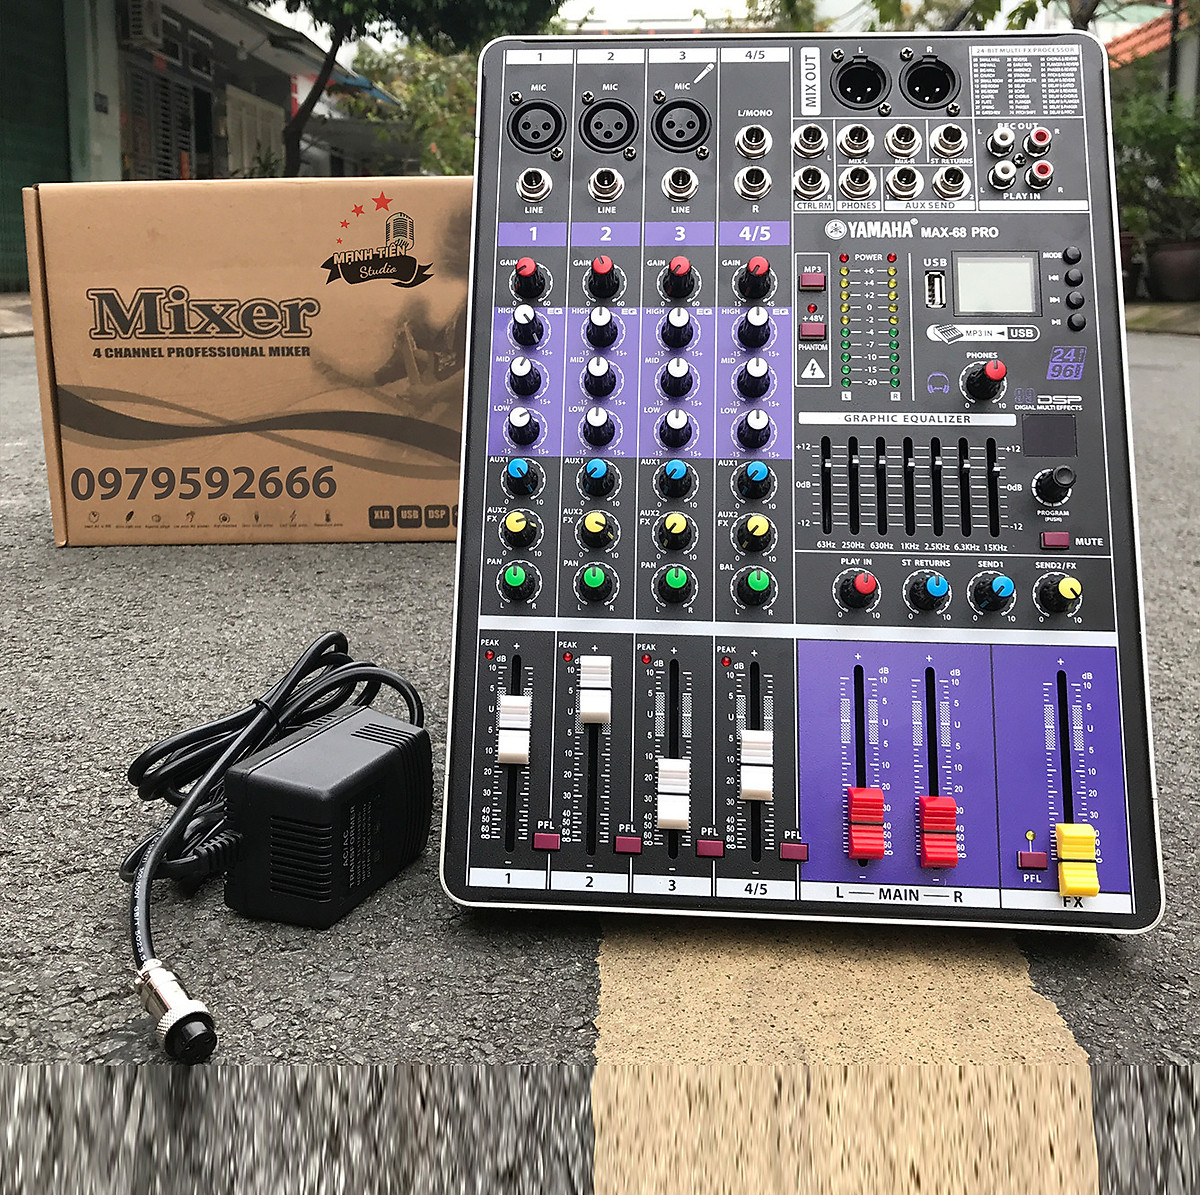 Bàn trộn âm thanh Mixer MAX 68 Pro - 99 hiệu ứng vang âm thanh chuẩn phòng thu, hát karaoke gia đình, live stream chuyên nghiệp - Bảo hành 12 tháng - Hàng chính hãng